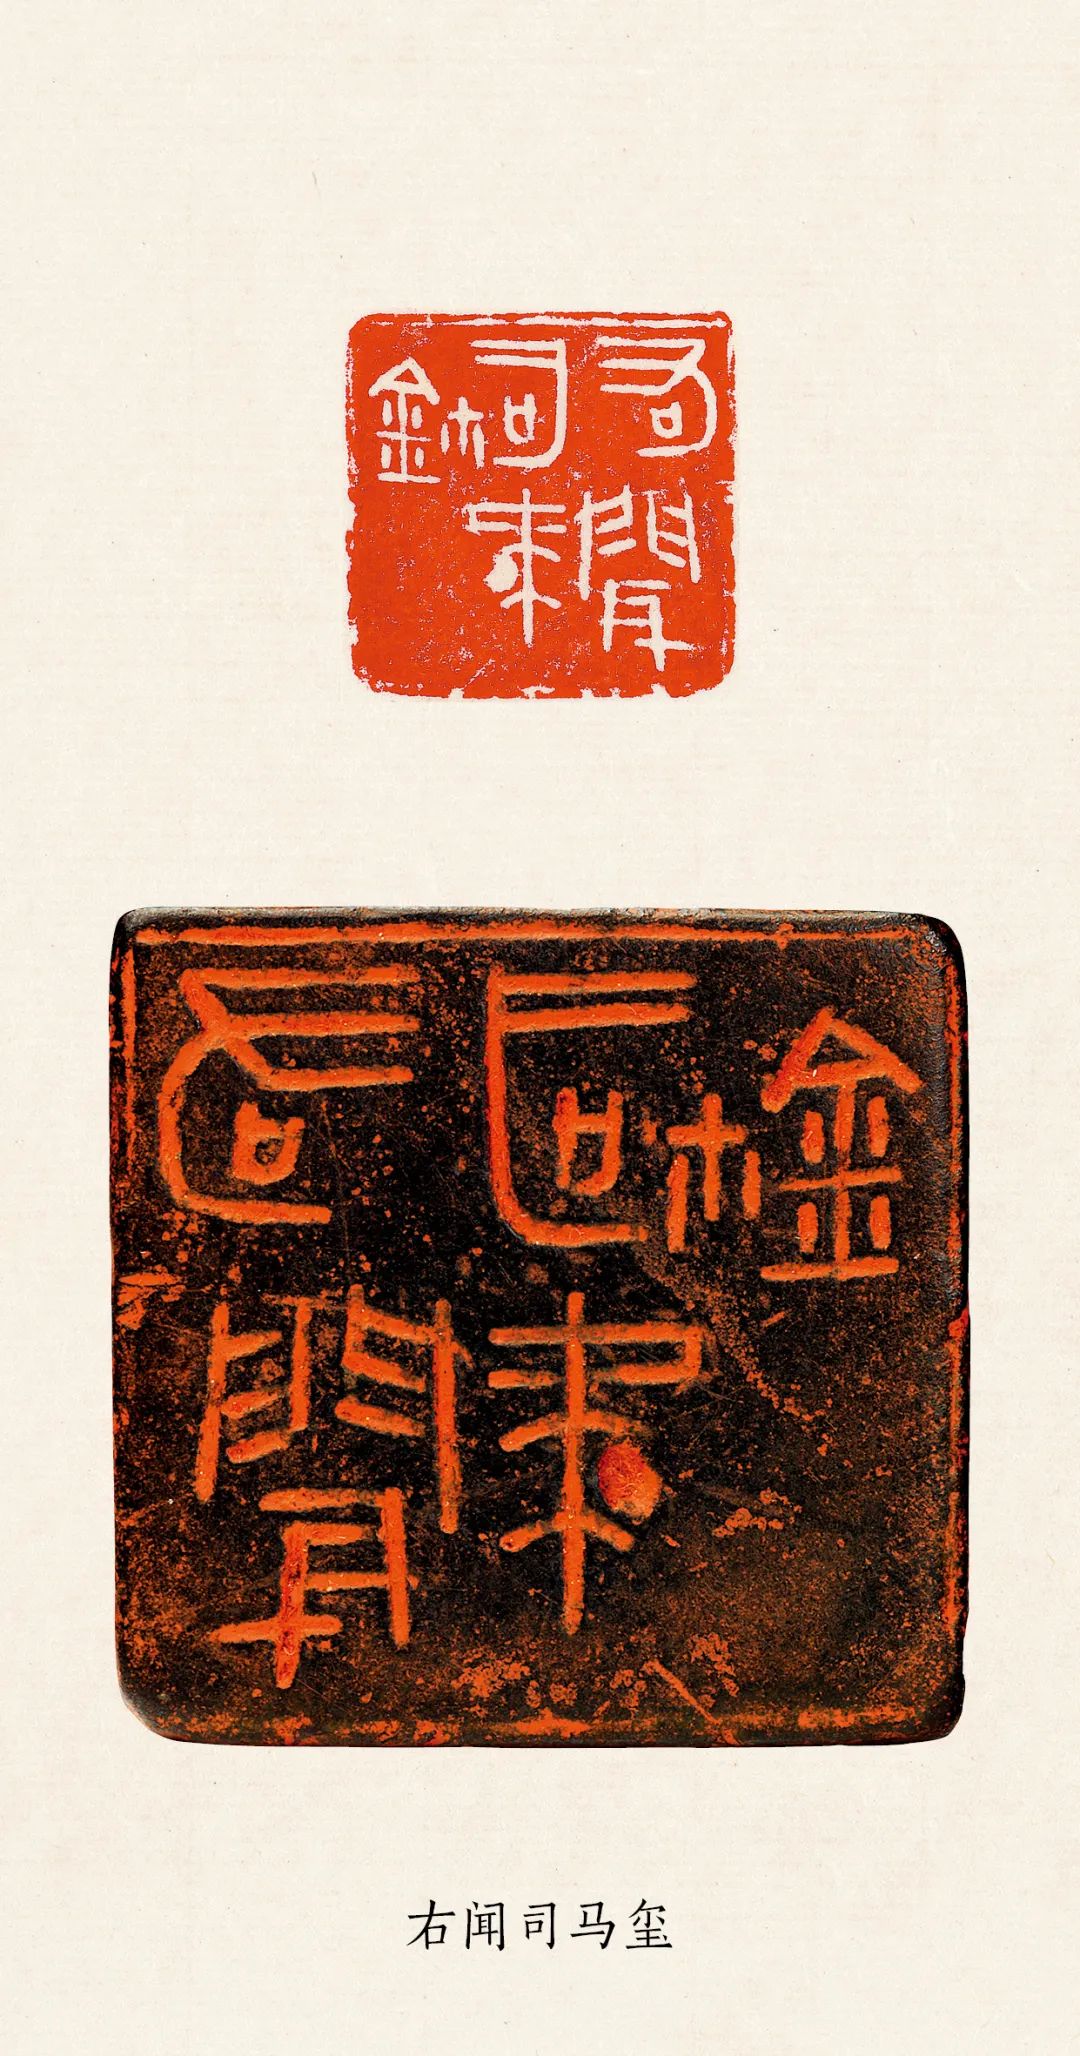 两千年中国篆刻名品全覆盖！11765方原钤印蜕，825件原作印石，释文注录 